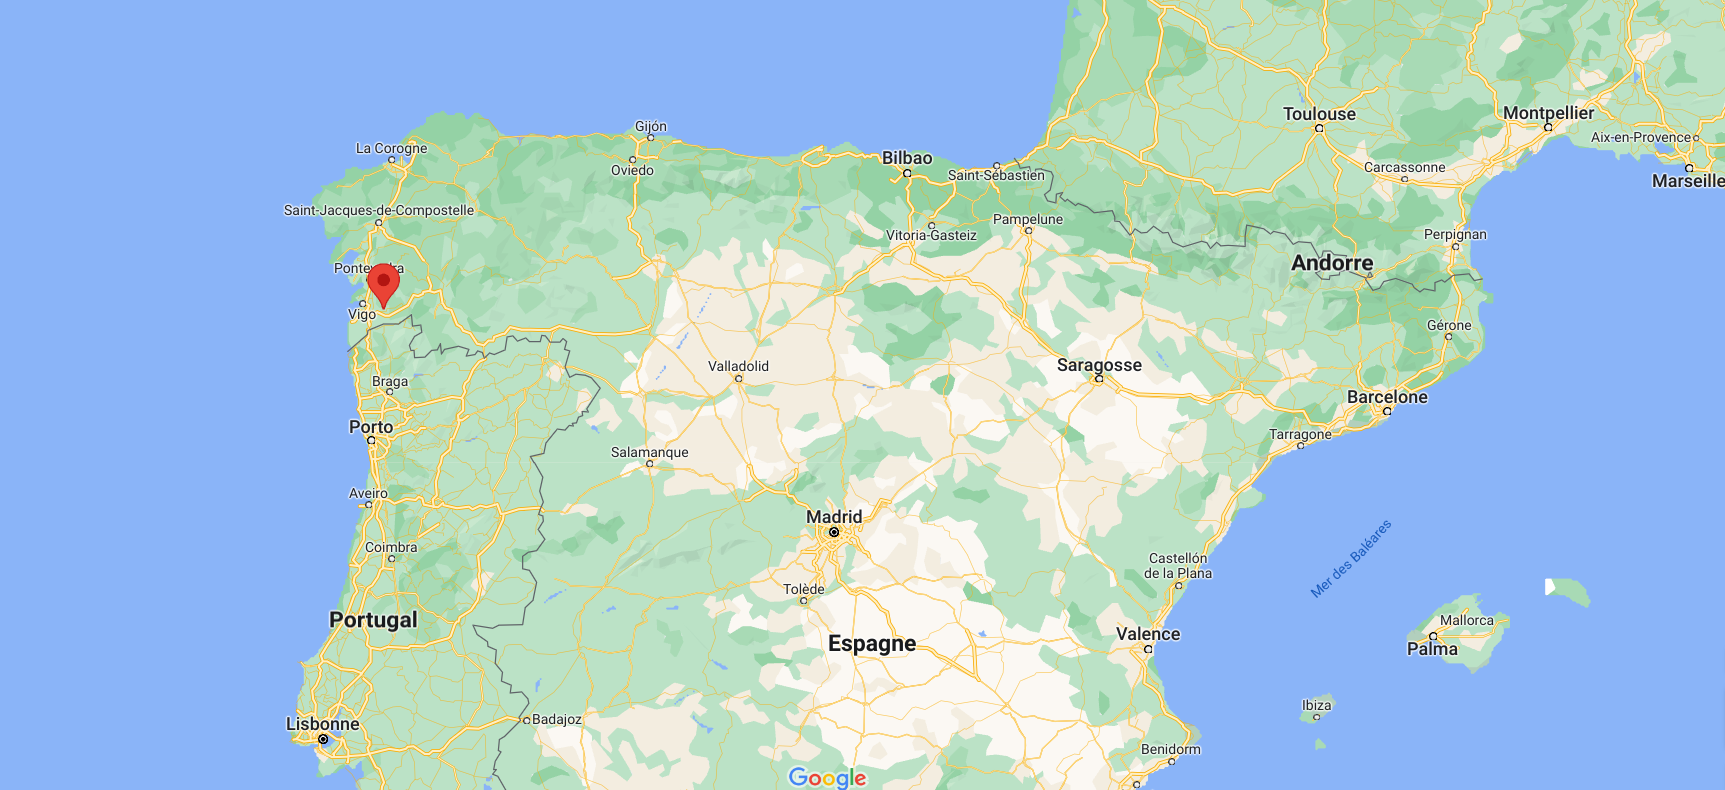 Devant ralier les villes de Lugo à Vigo, le bus avait prévu d’arriver à destination après 22 heures mais est tombé dans la rivière vers 21h20, à hauteur de Cerdedo-Cotobade.